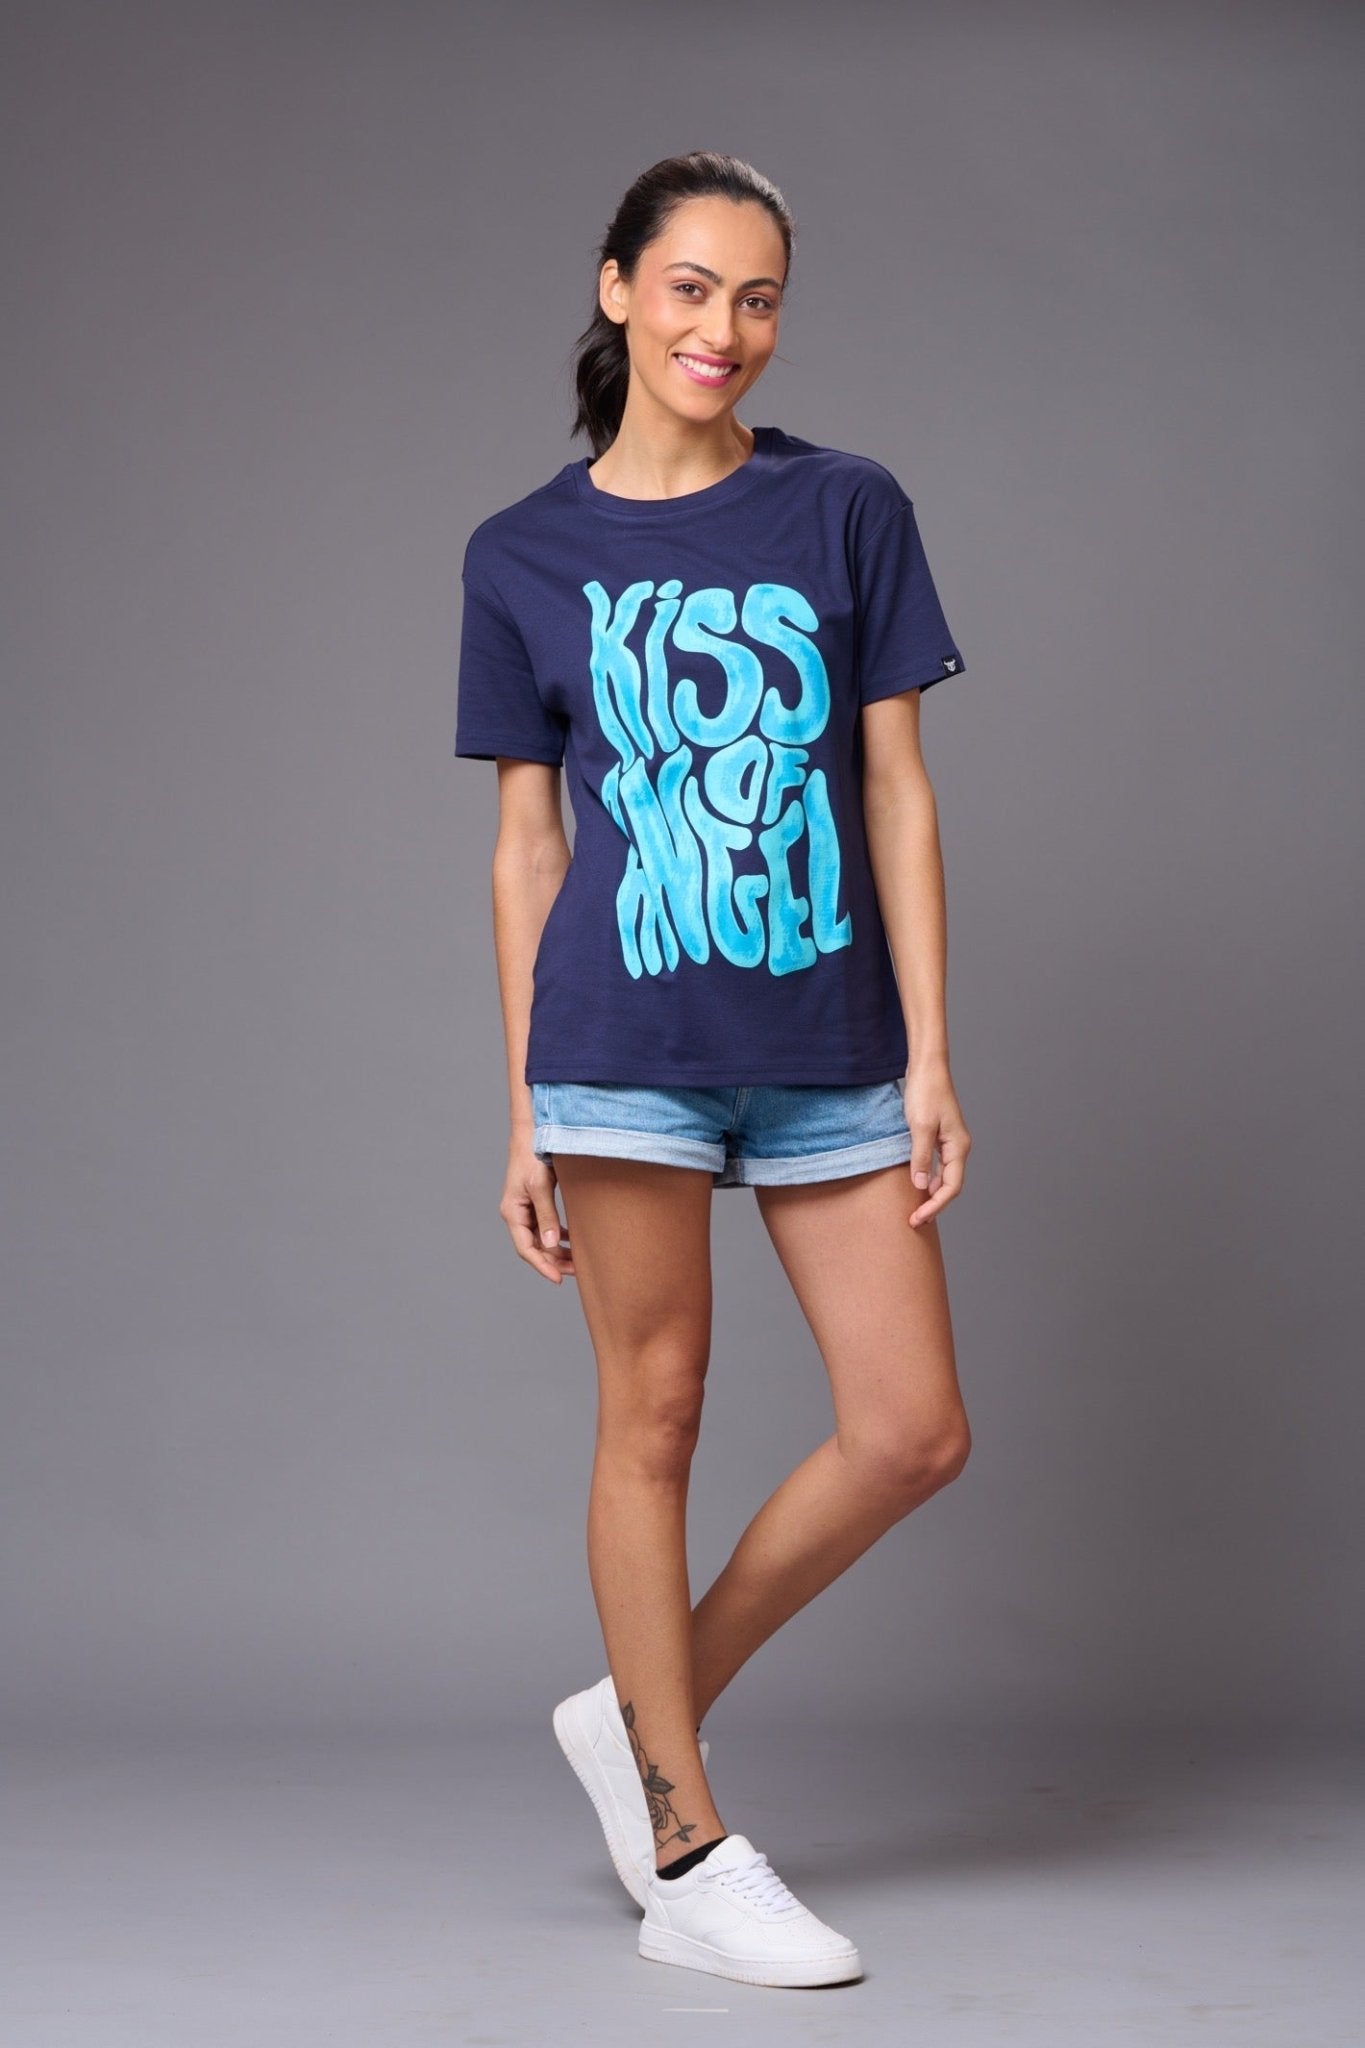 Kiss of Angel Printed Blue Oversized T-Shirt for Women - Go Devil